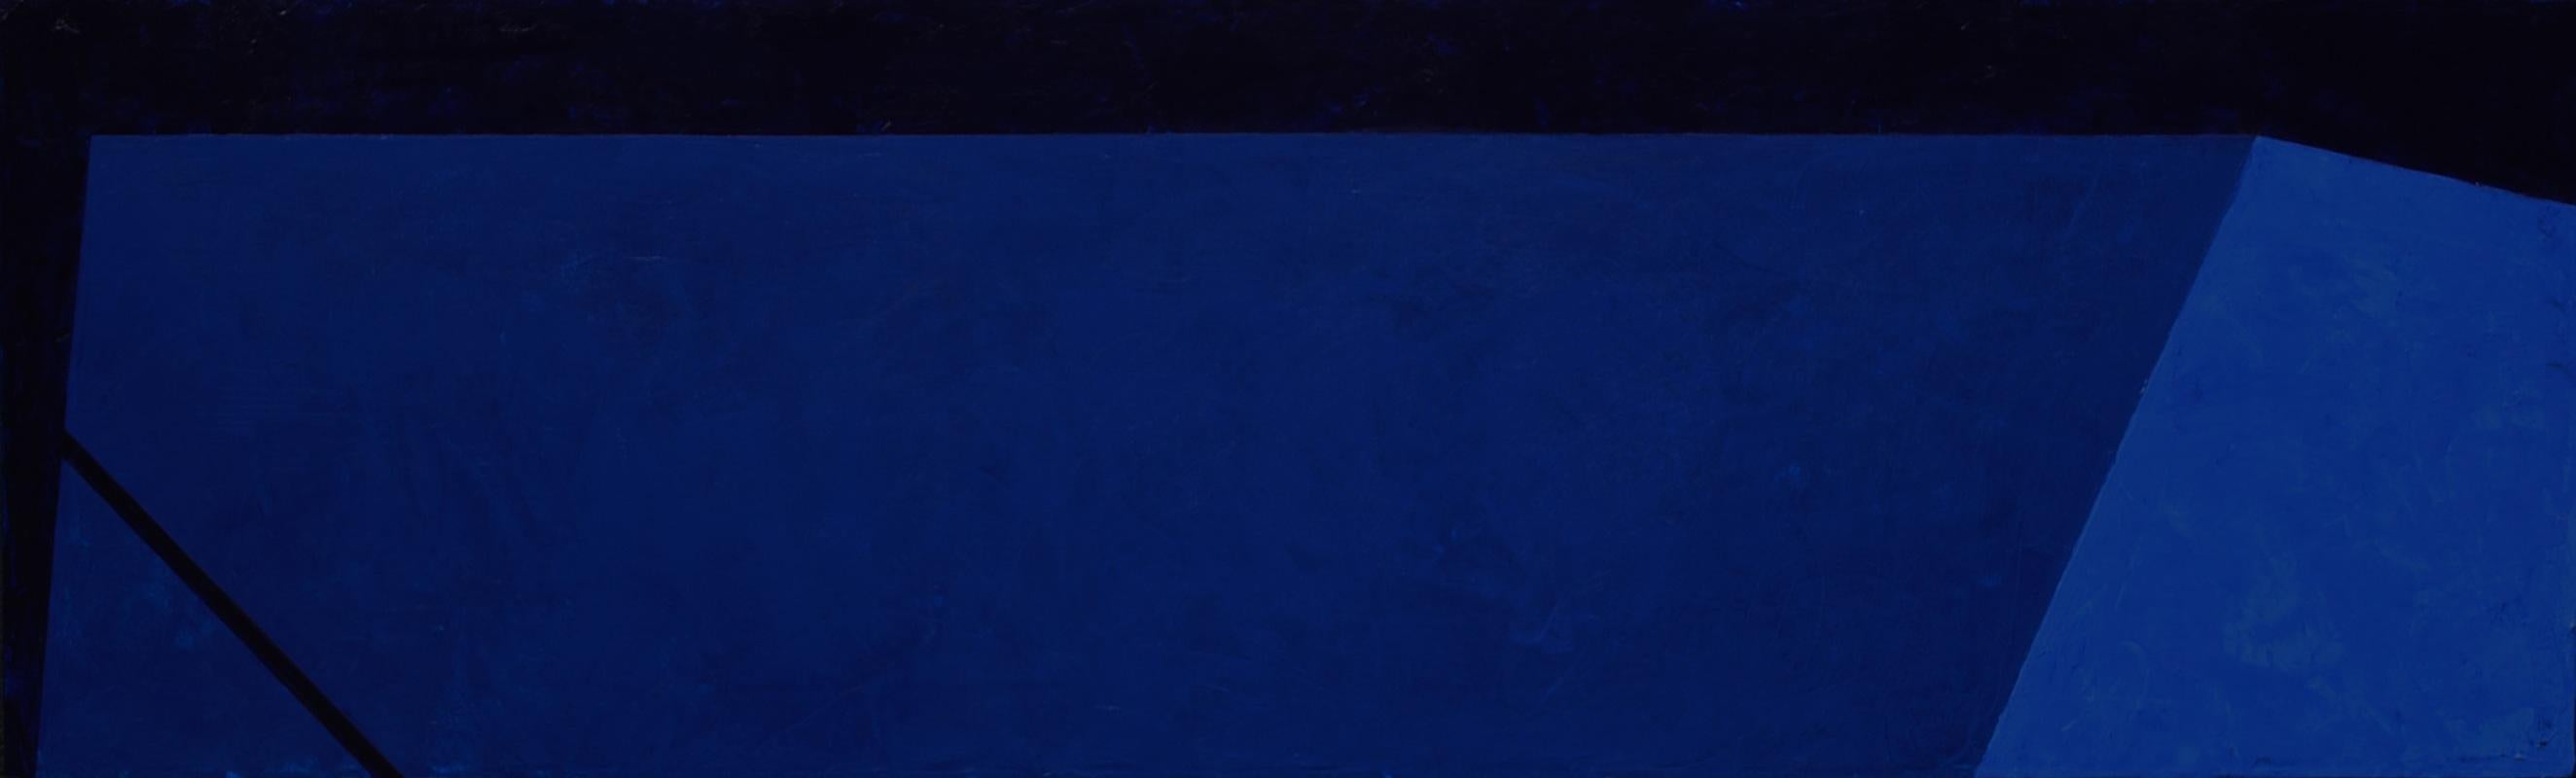 Macyn Bolt, Dark Pool IV, acrylic on canvas, Minimalist, 18 x 60, 2018 For Sale 5